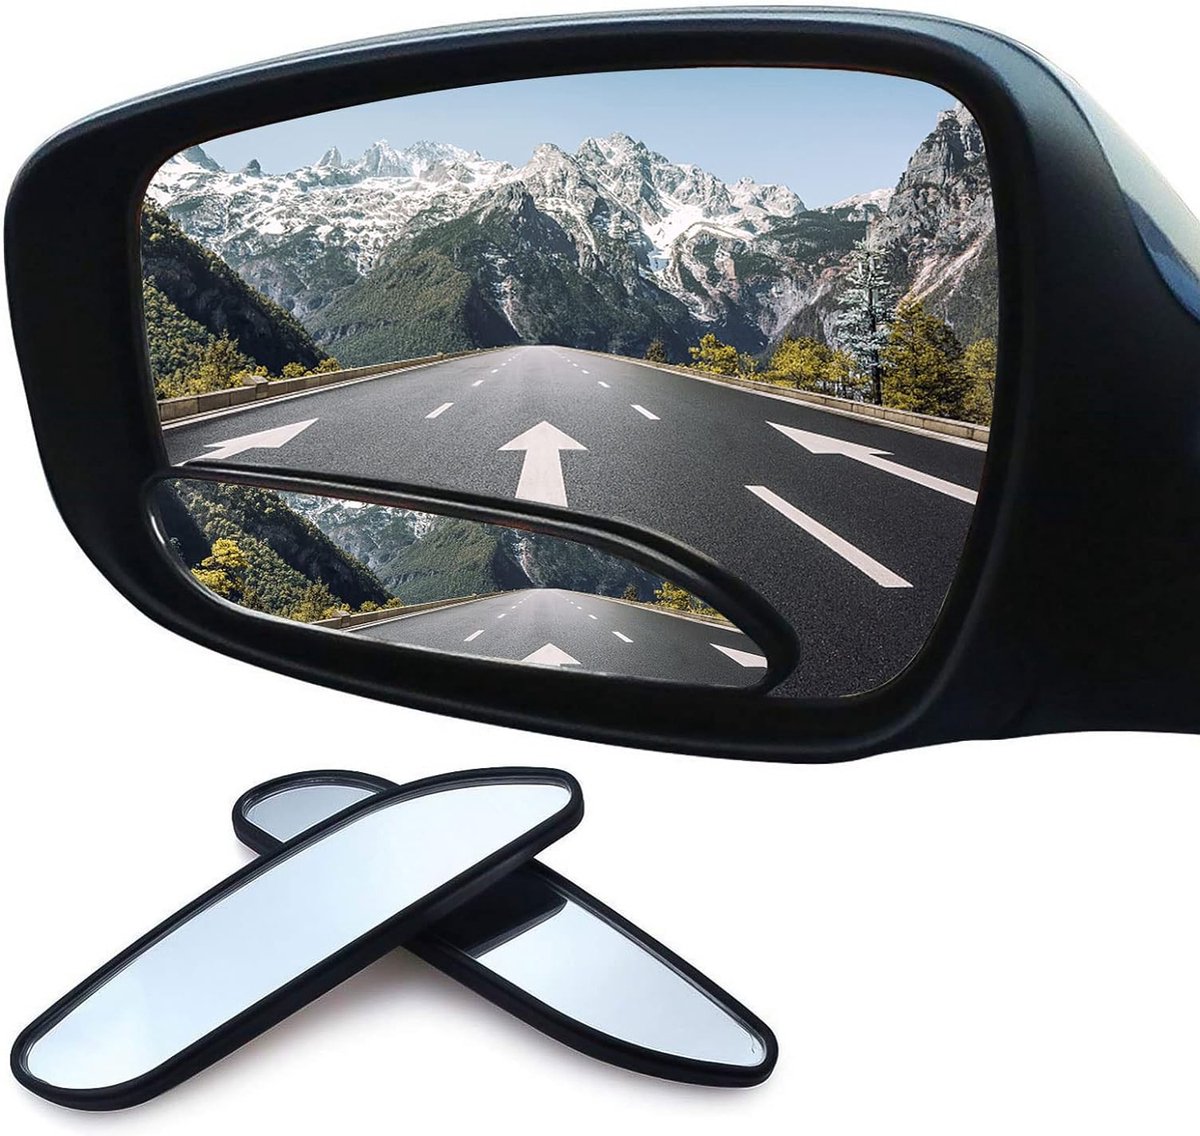 Auto dodehoekspiegels - Universeel - Dodehoekspiegel - Zwart - Glas - Verstelbaar